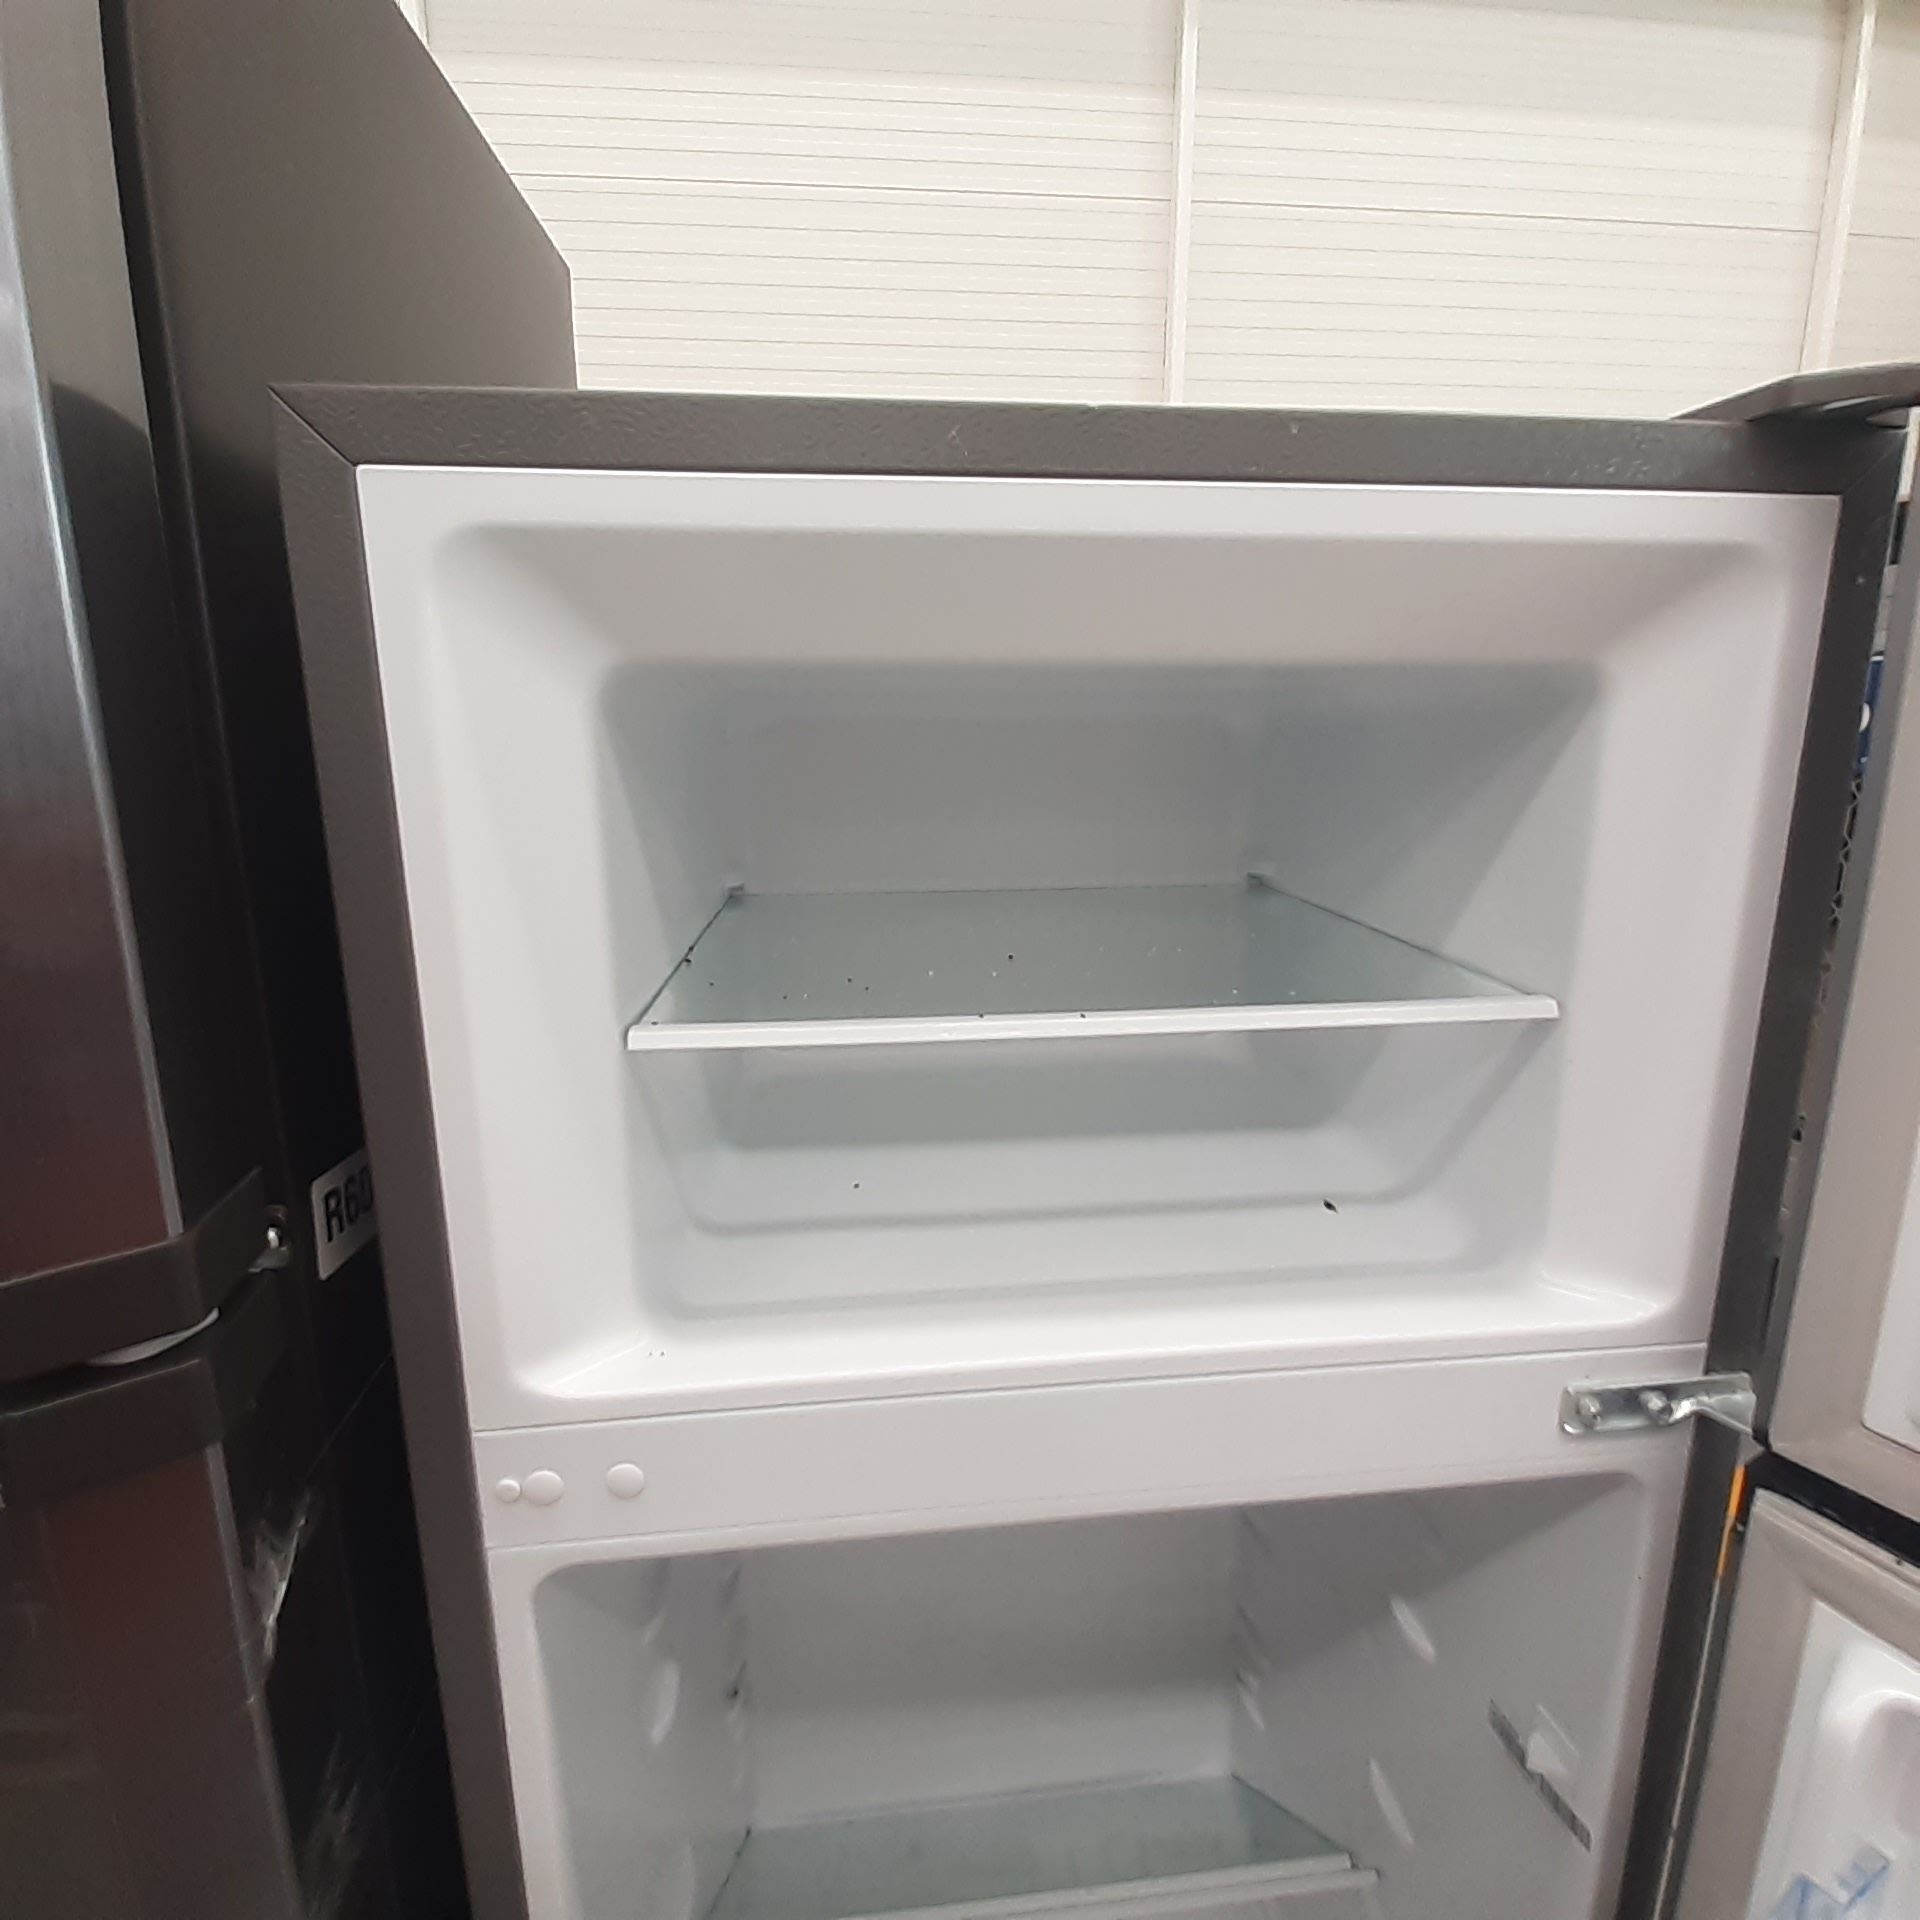 Lote De 2 Refrigeradores Contiene: 1 Refrigerador Marca Mabe, 1 Refrigerador Marca Hisense, Distinto - Image 12 of 14